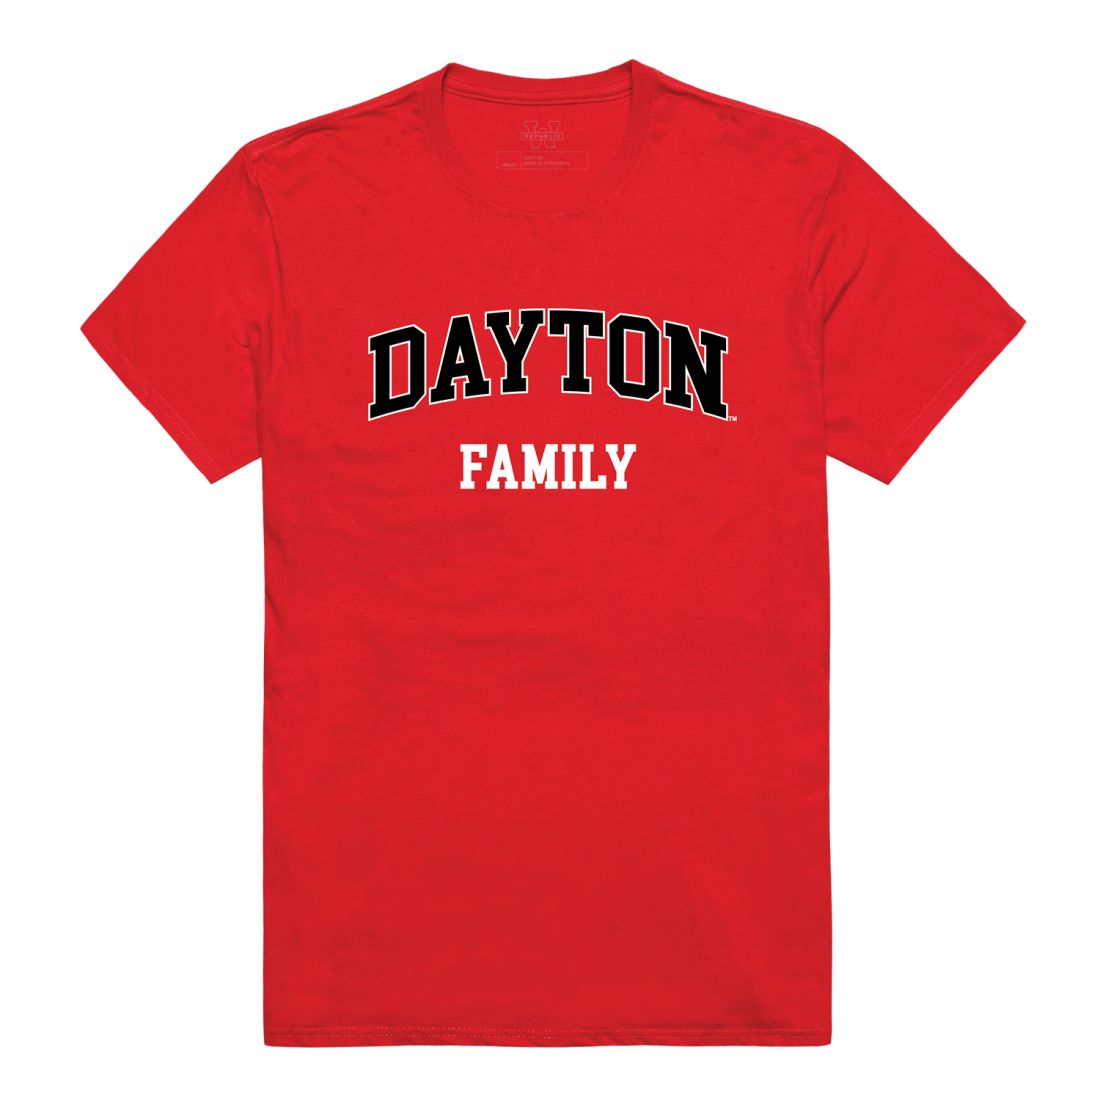 UD University of Dayton Flyers Family T-Shirt